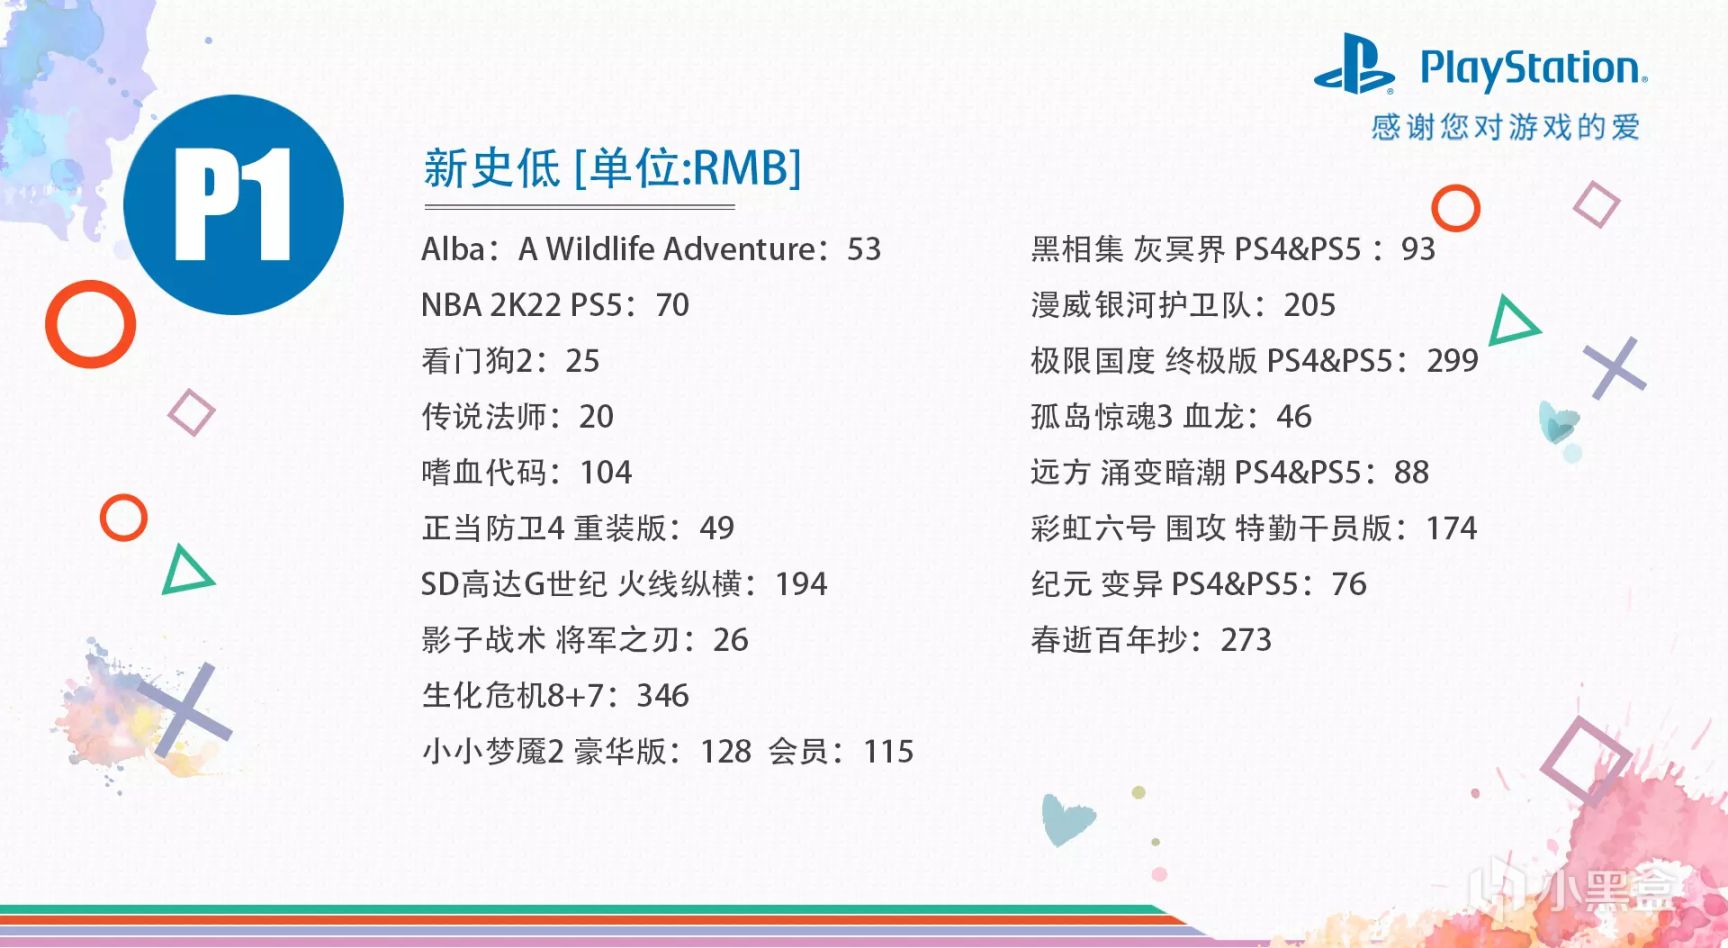 【折扣】港服PS4/PS5平台7月优惠低至2折，10款史低中文游戏推荐-第1张